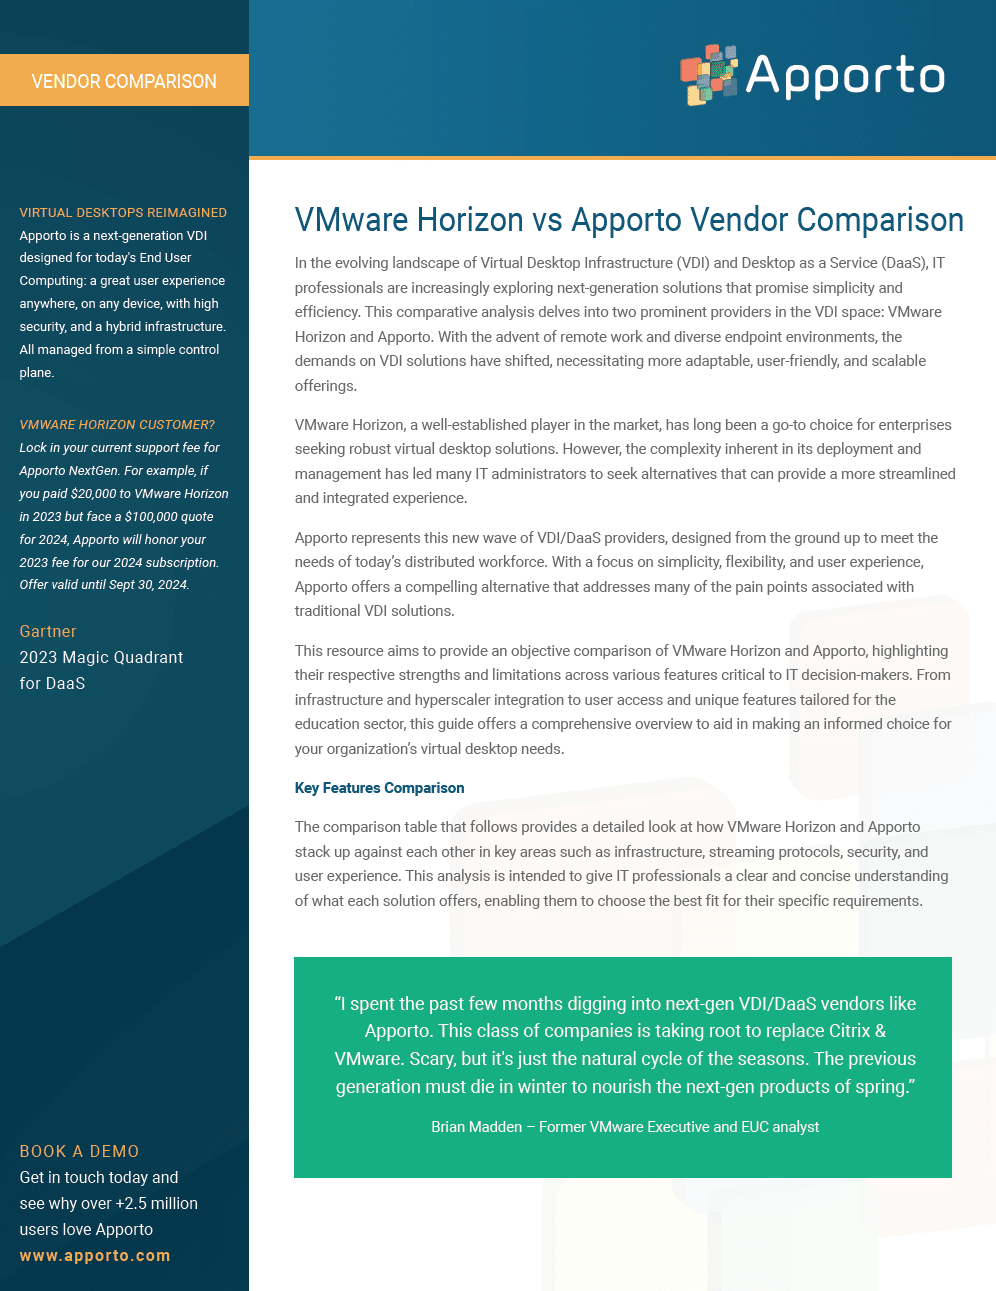 Apporto vs VMware Horizon - Vendor Comparison